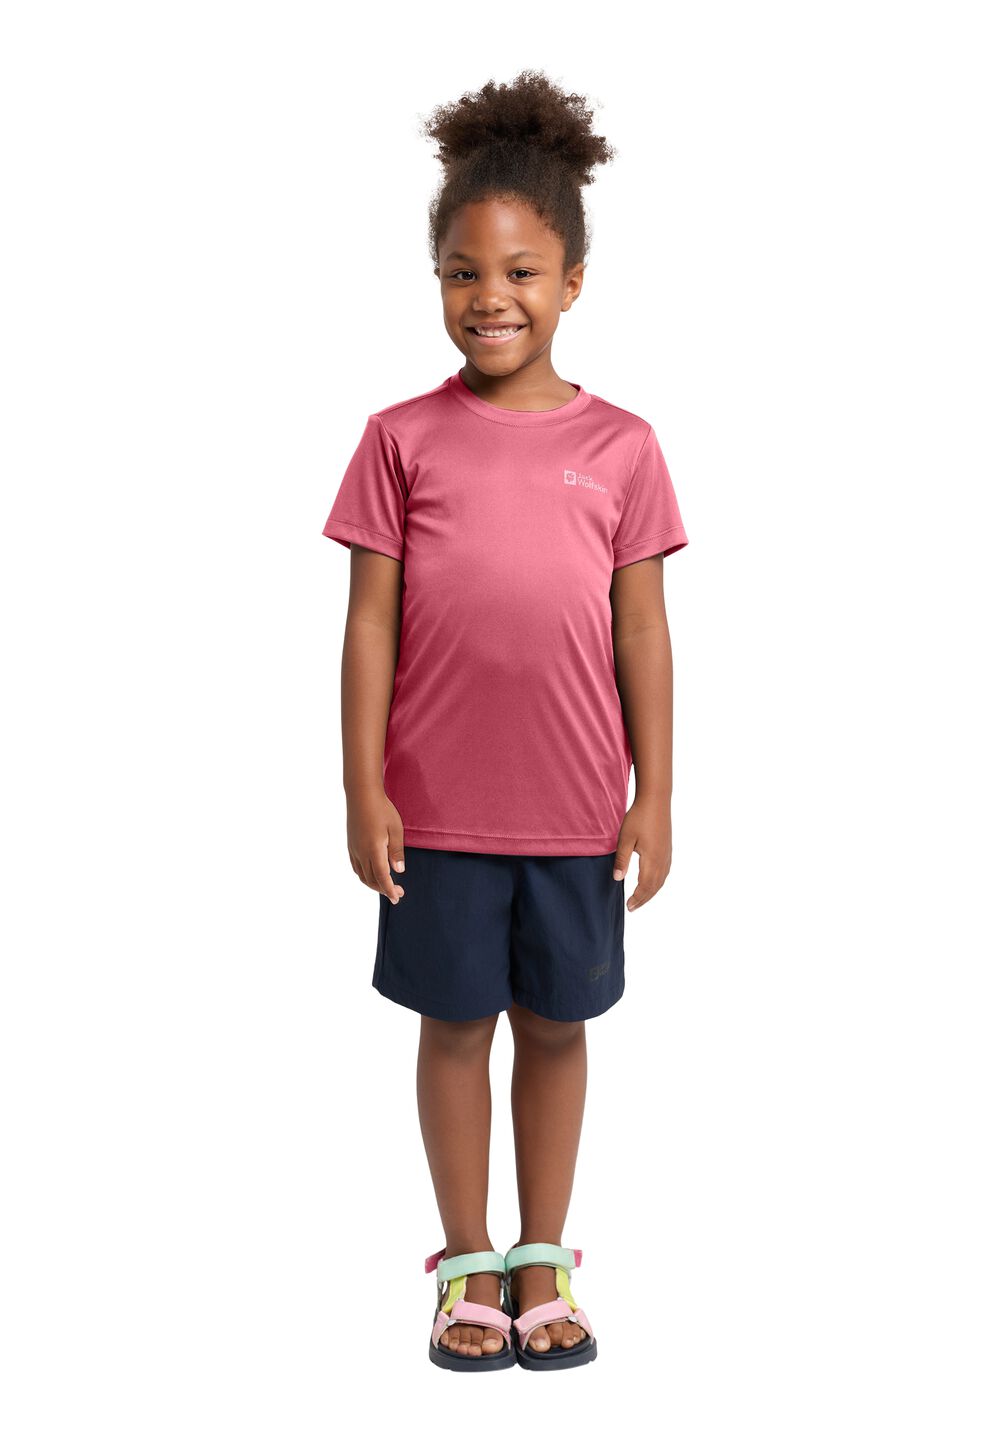 Jack Wolfskin Active Solid T-Shirt Kids Functioneel shirt Kinderen 116 soft pink soft pink